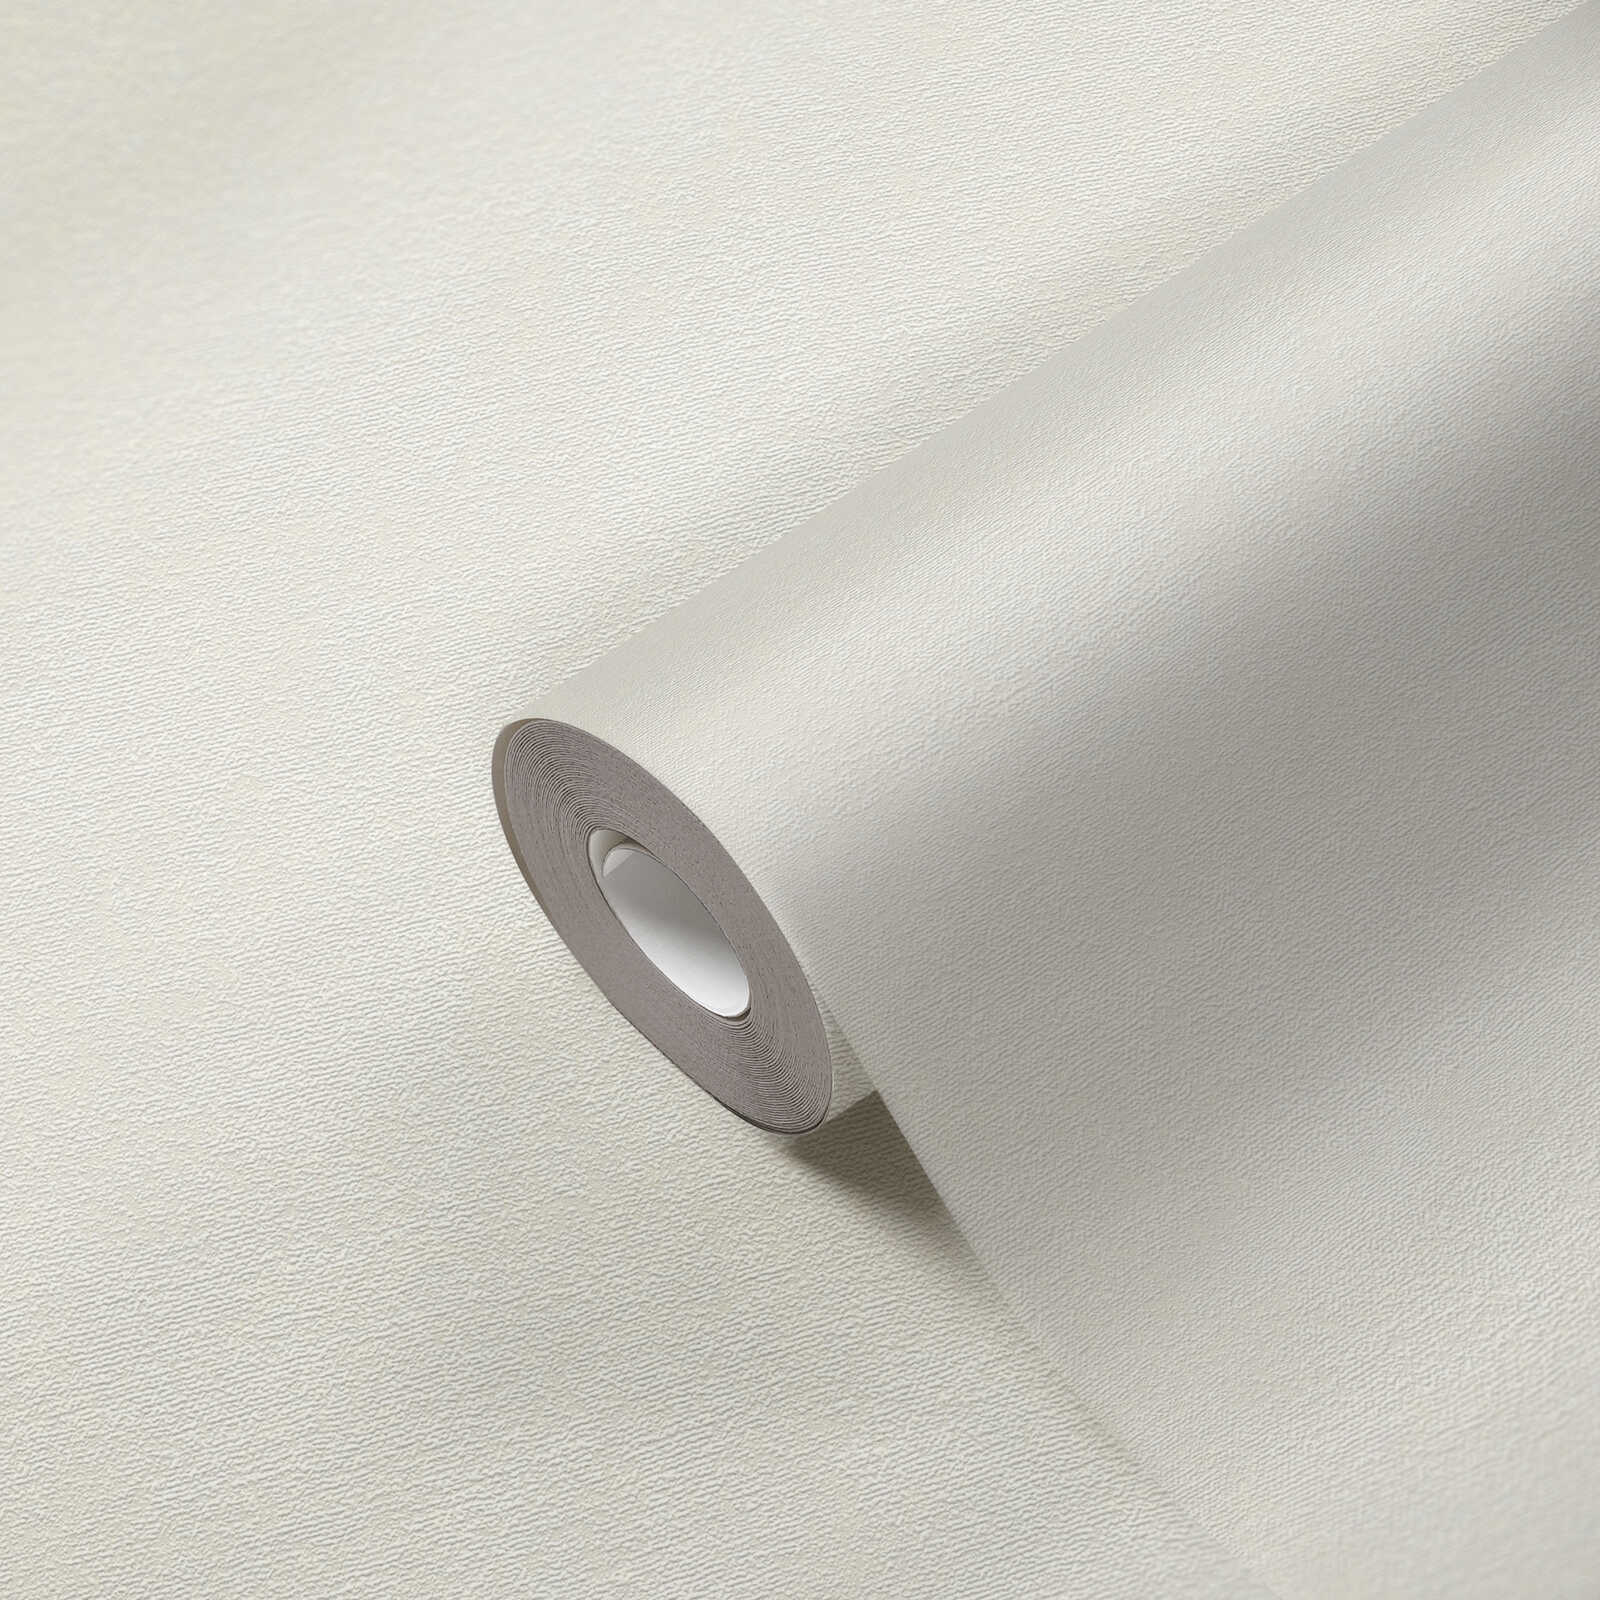             Eenheidsbehang in een eenvoudige kleurtint - wit, crème
        